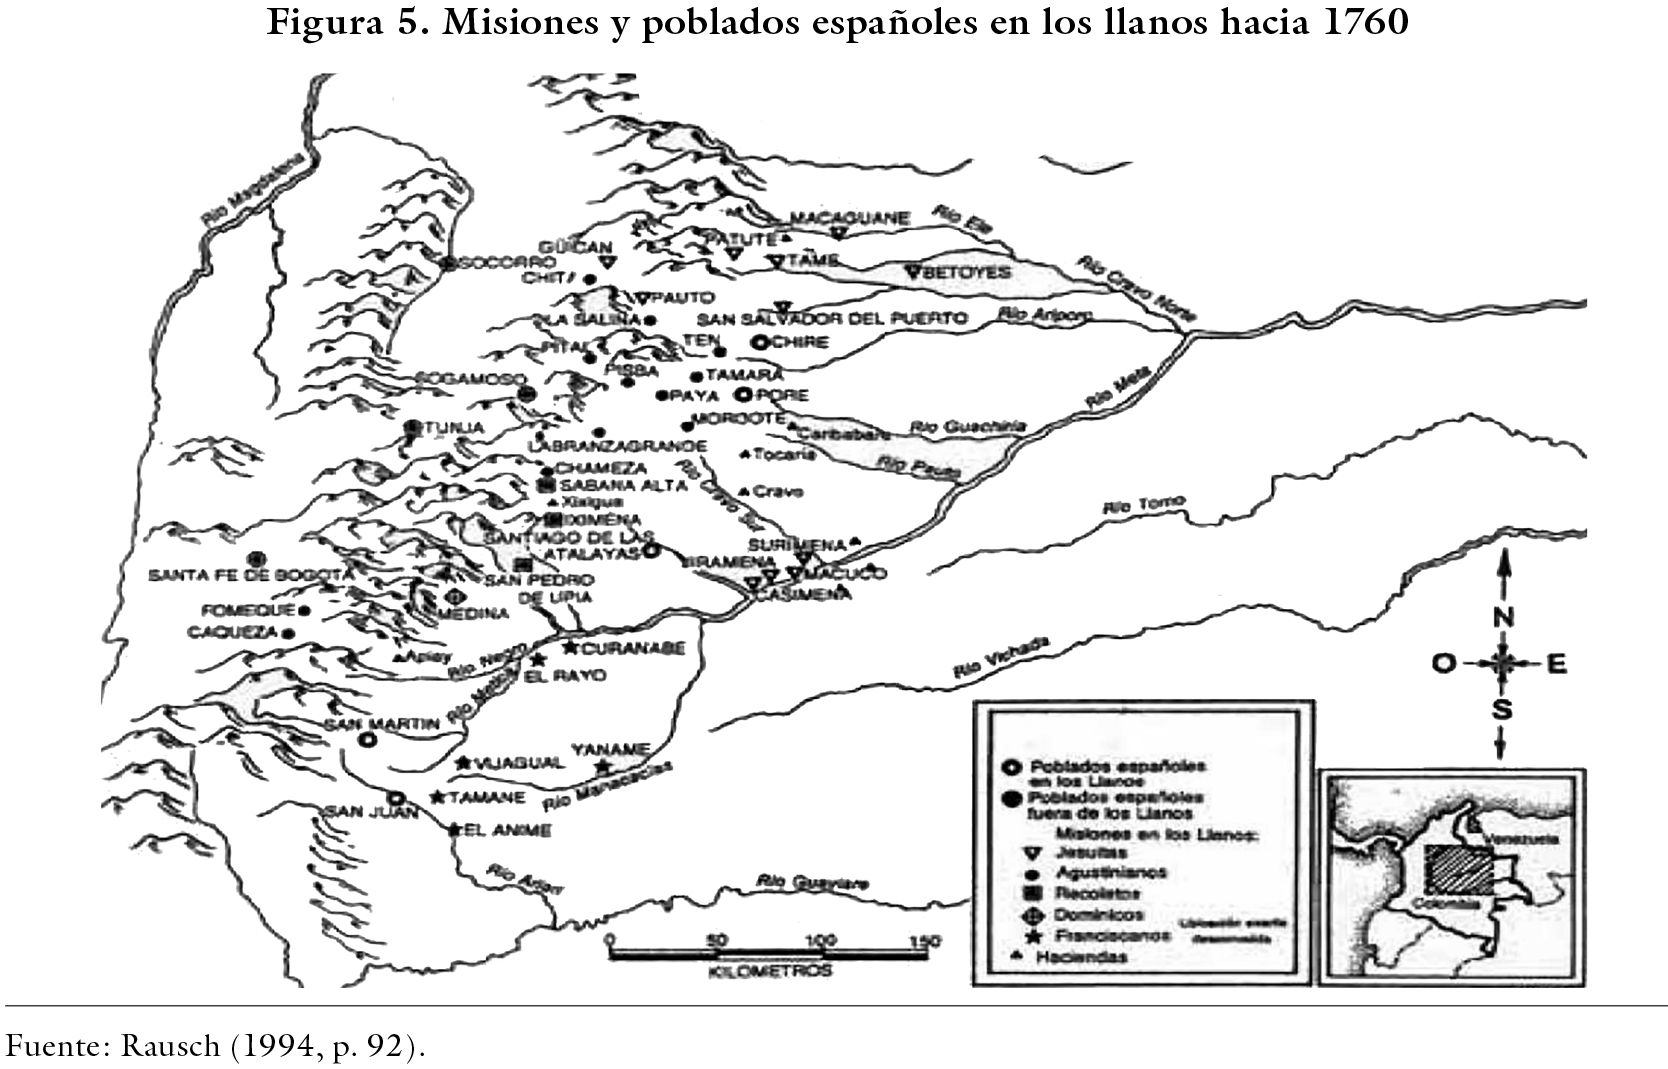 Misiones y poblados españoles en los llanos hacia 1760